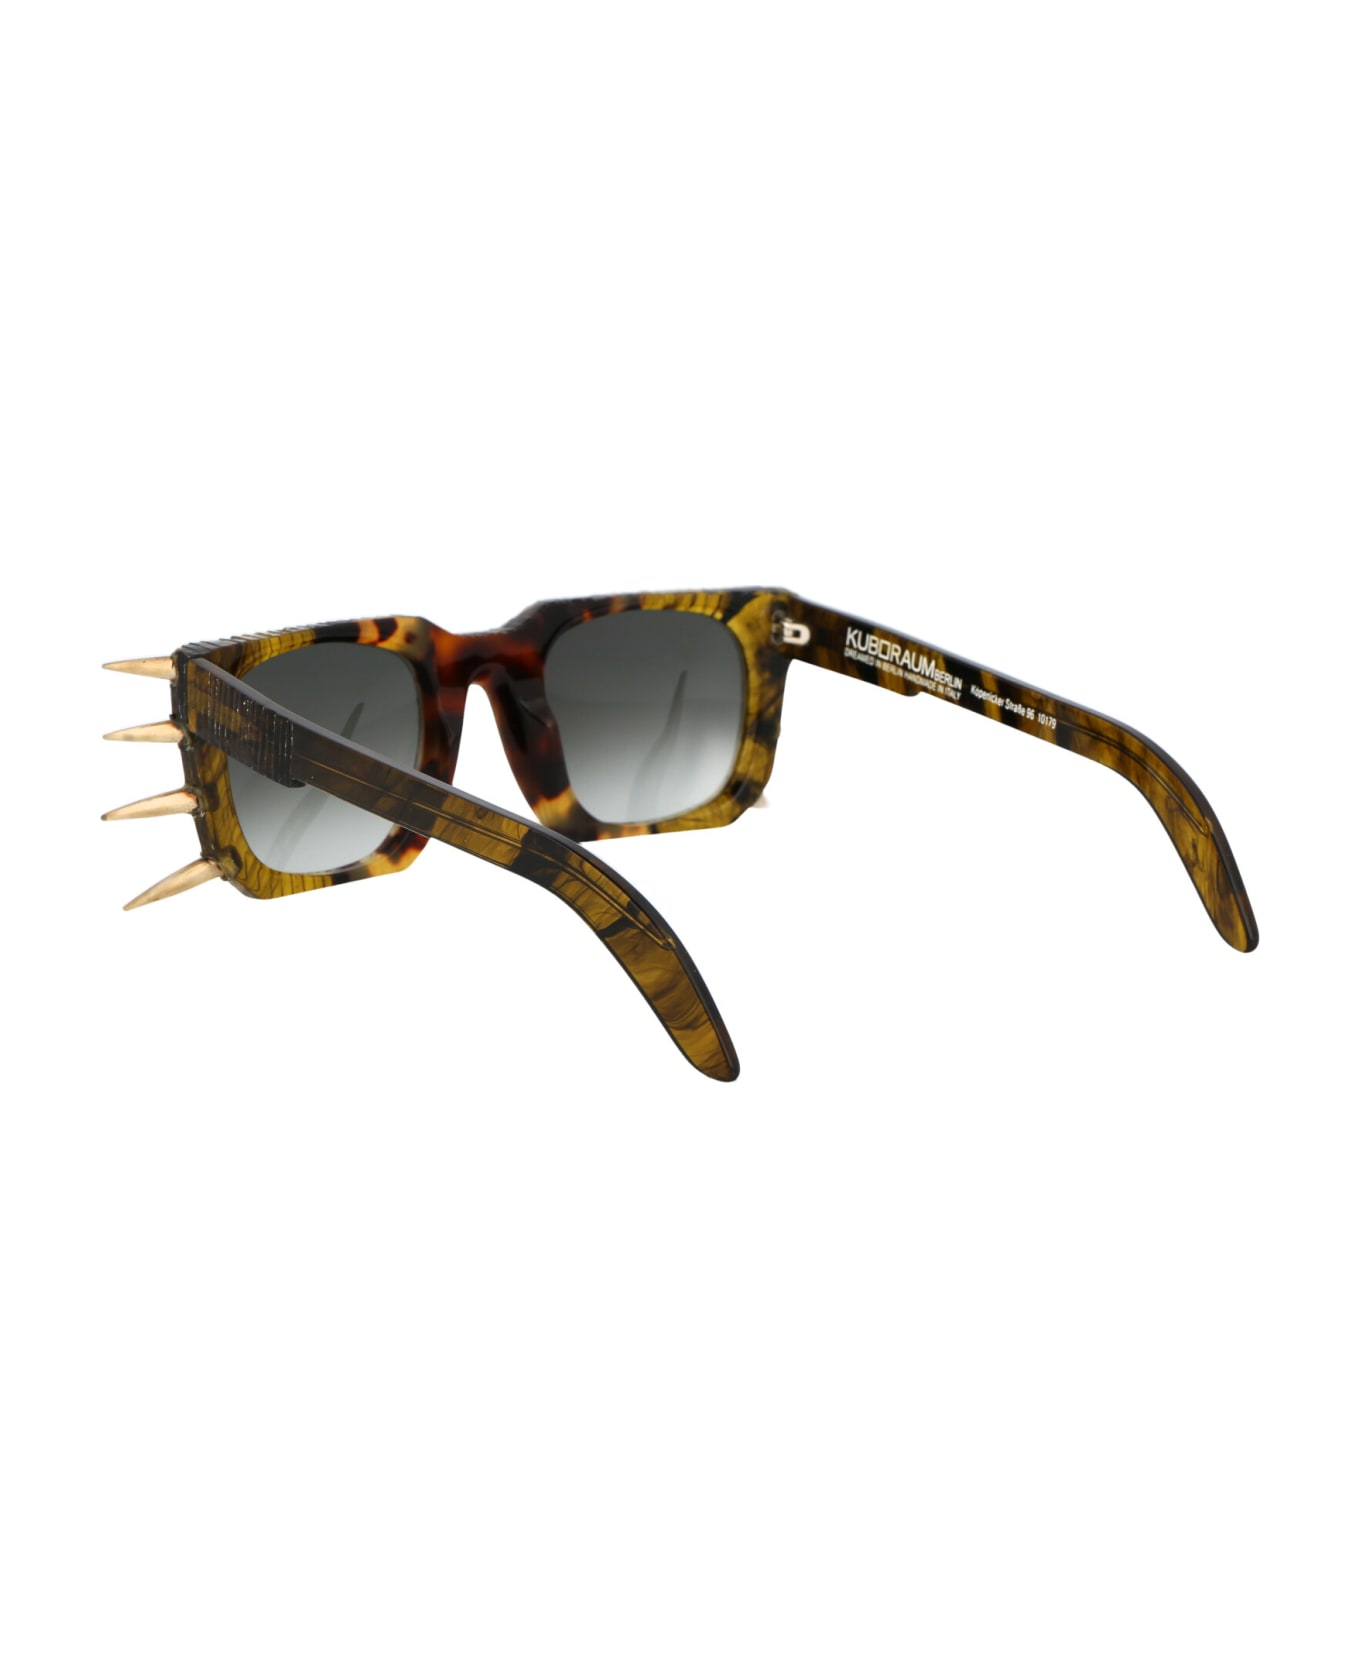 Kuboraum Maske U3 Sunglasses - HH GS MH HAVANA